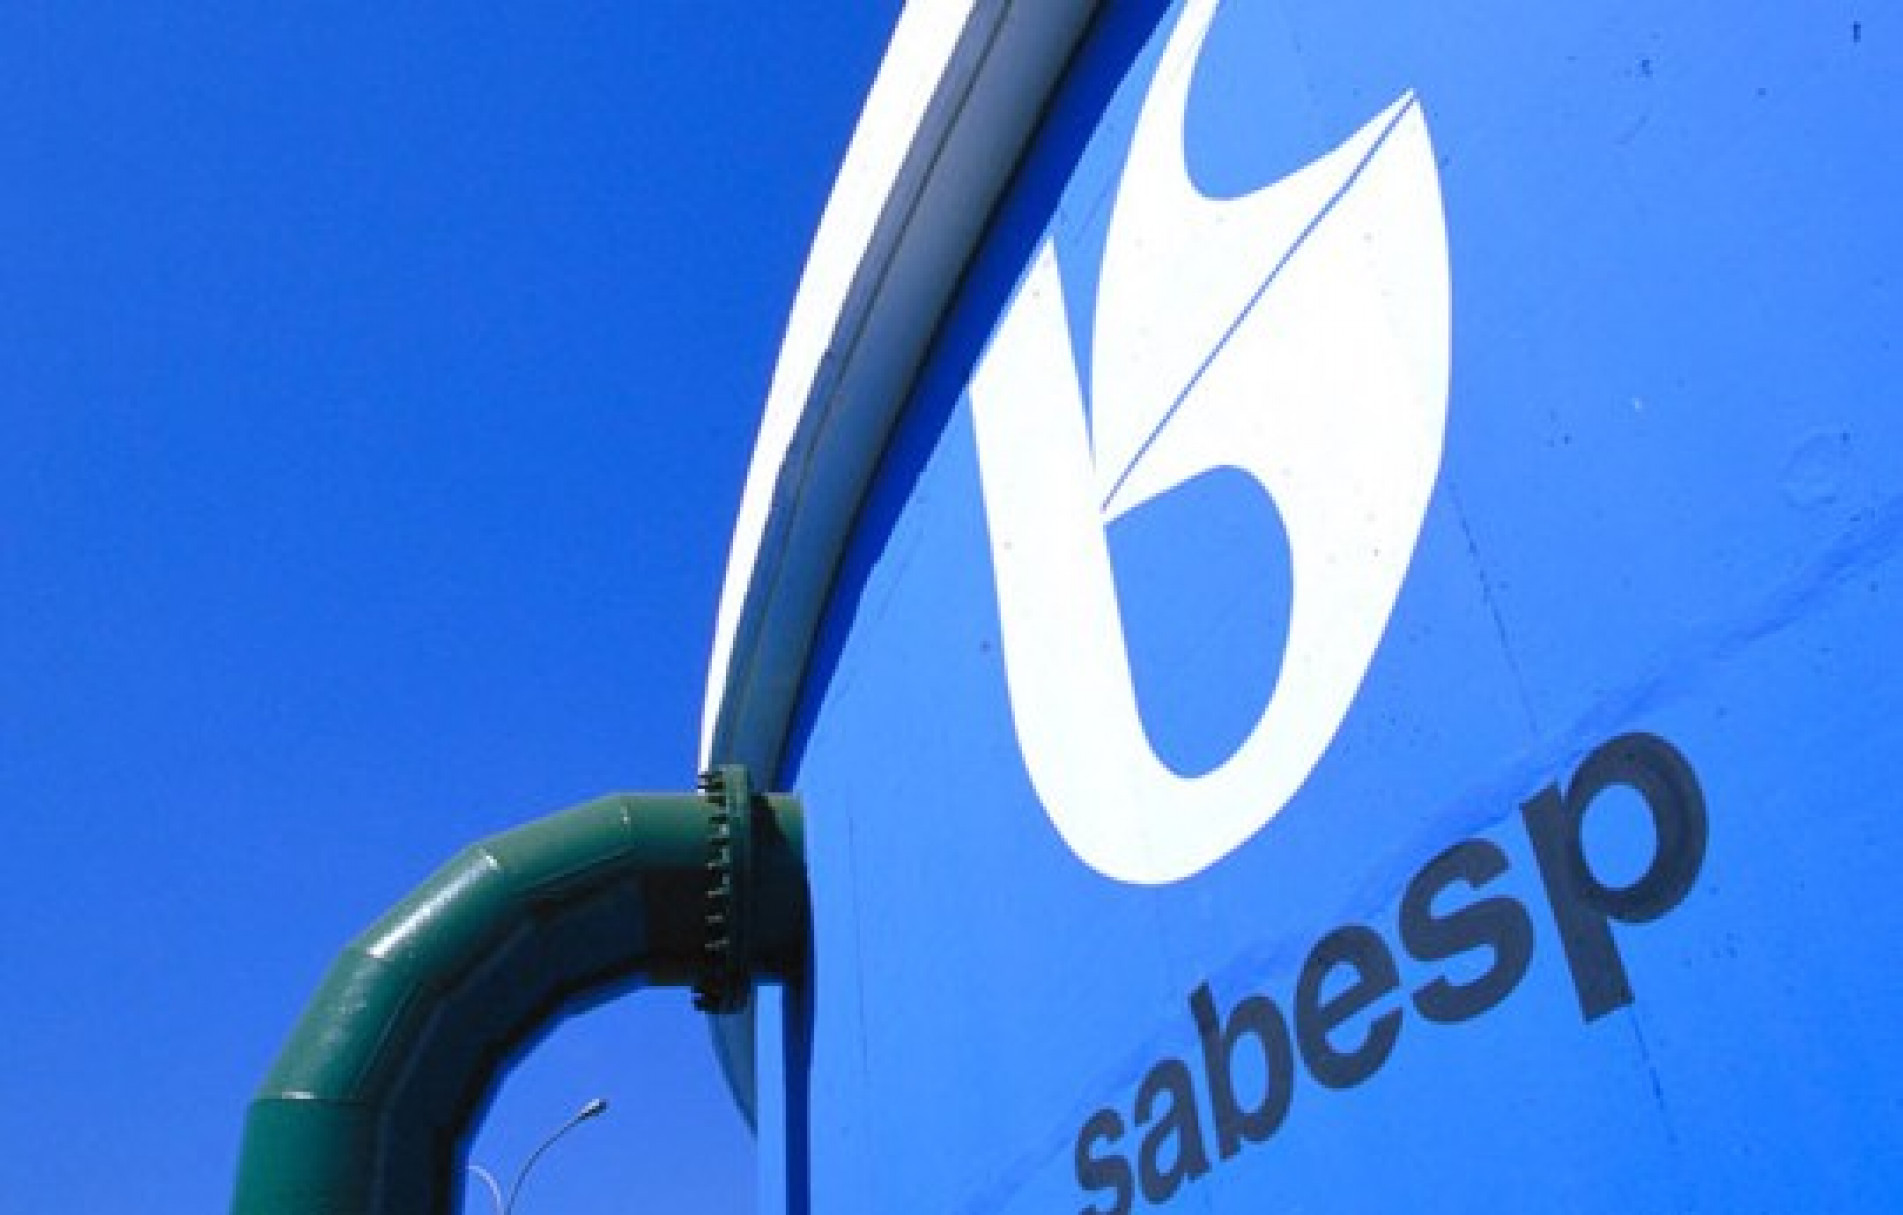 Sabesp espera melhora para este ano, apesar da inadimplência - Agência CMA